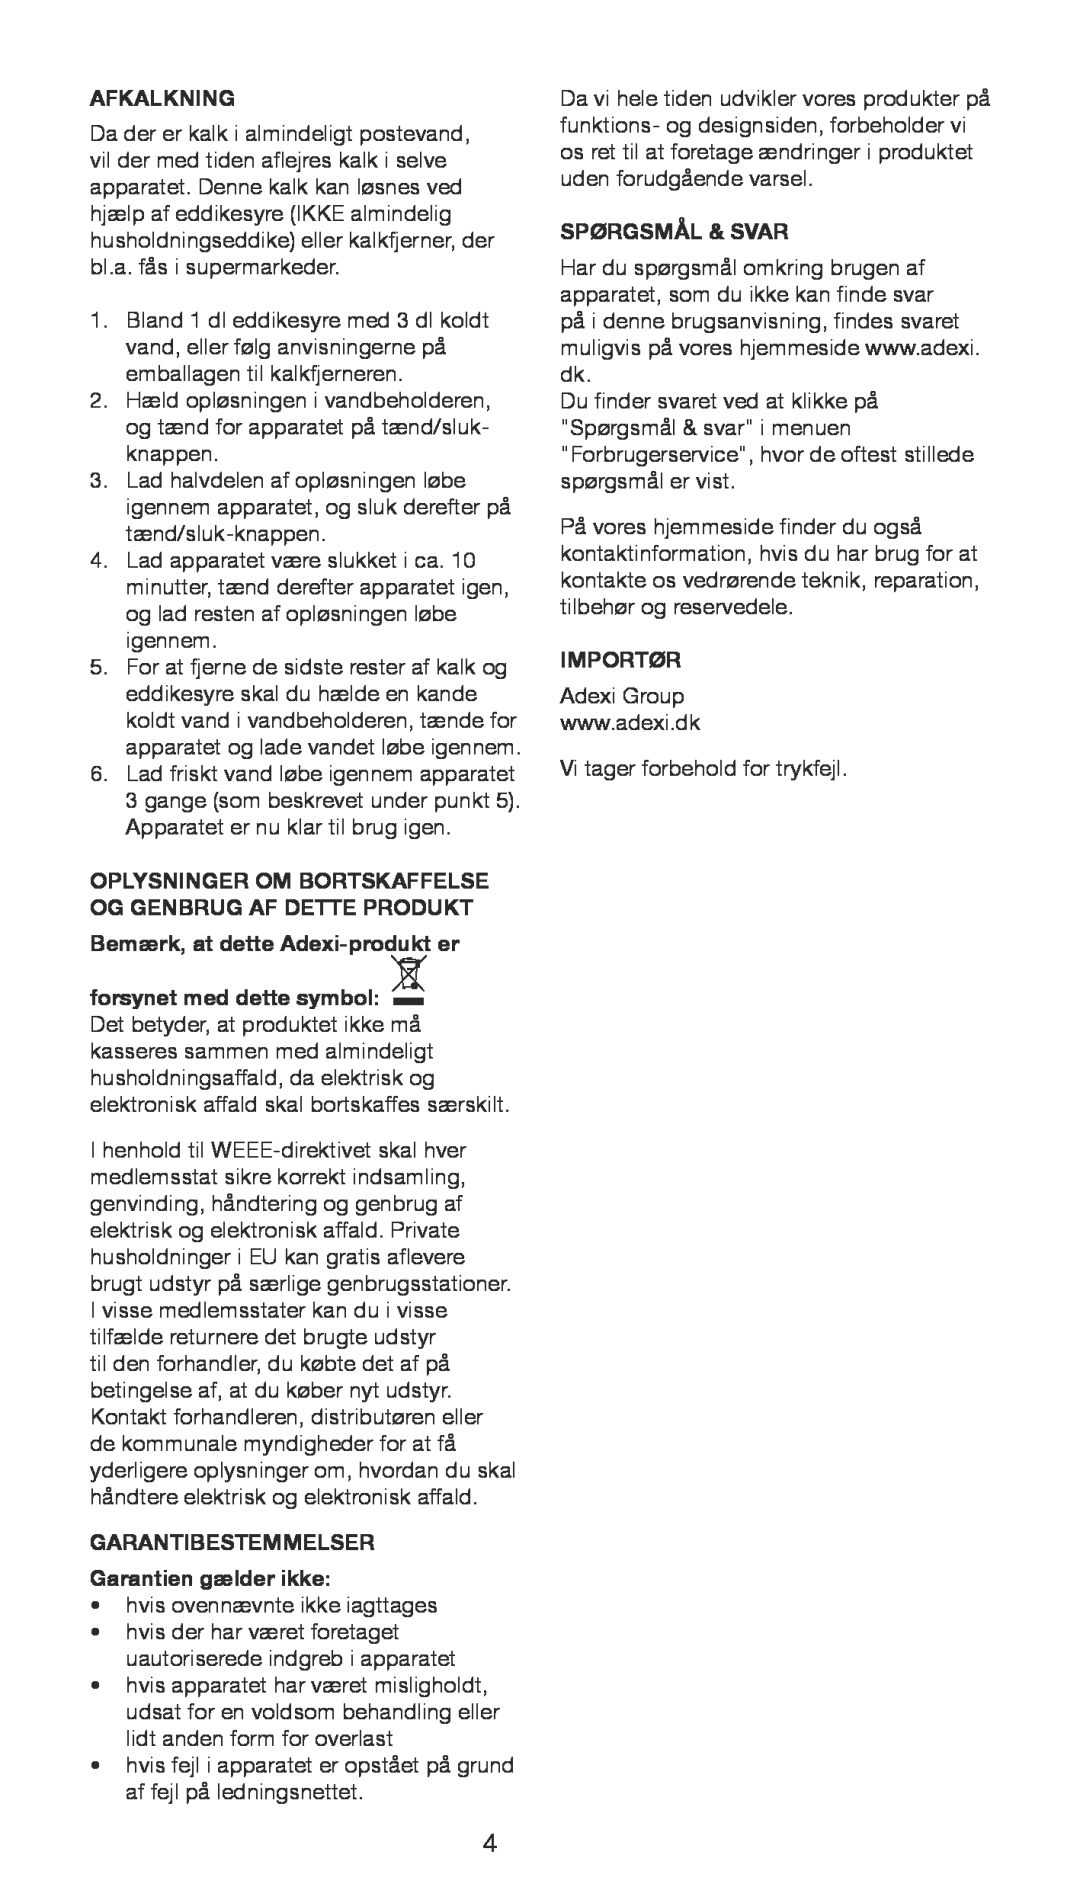 Melissa 645-097 manual Afkalkning, Oplysninger Om Bortskaffelse Og Genbrug Af Dette Produkt, Spørgsmål & Svar, Importør 